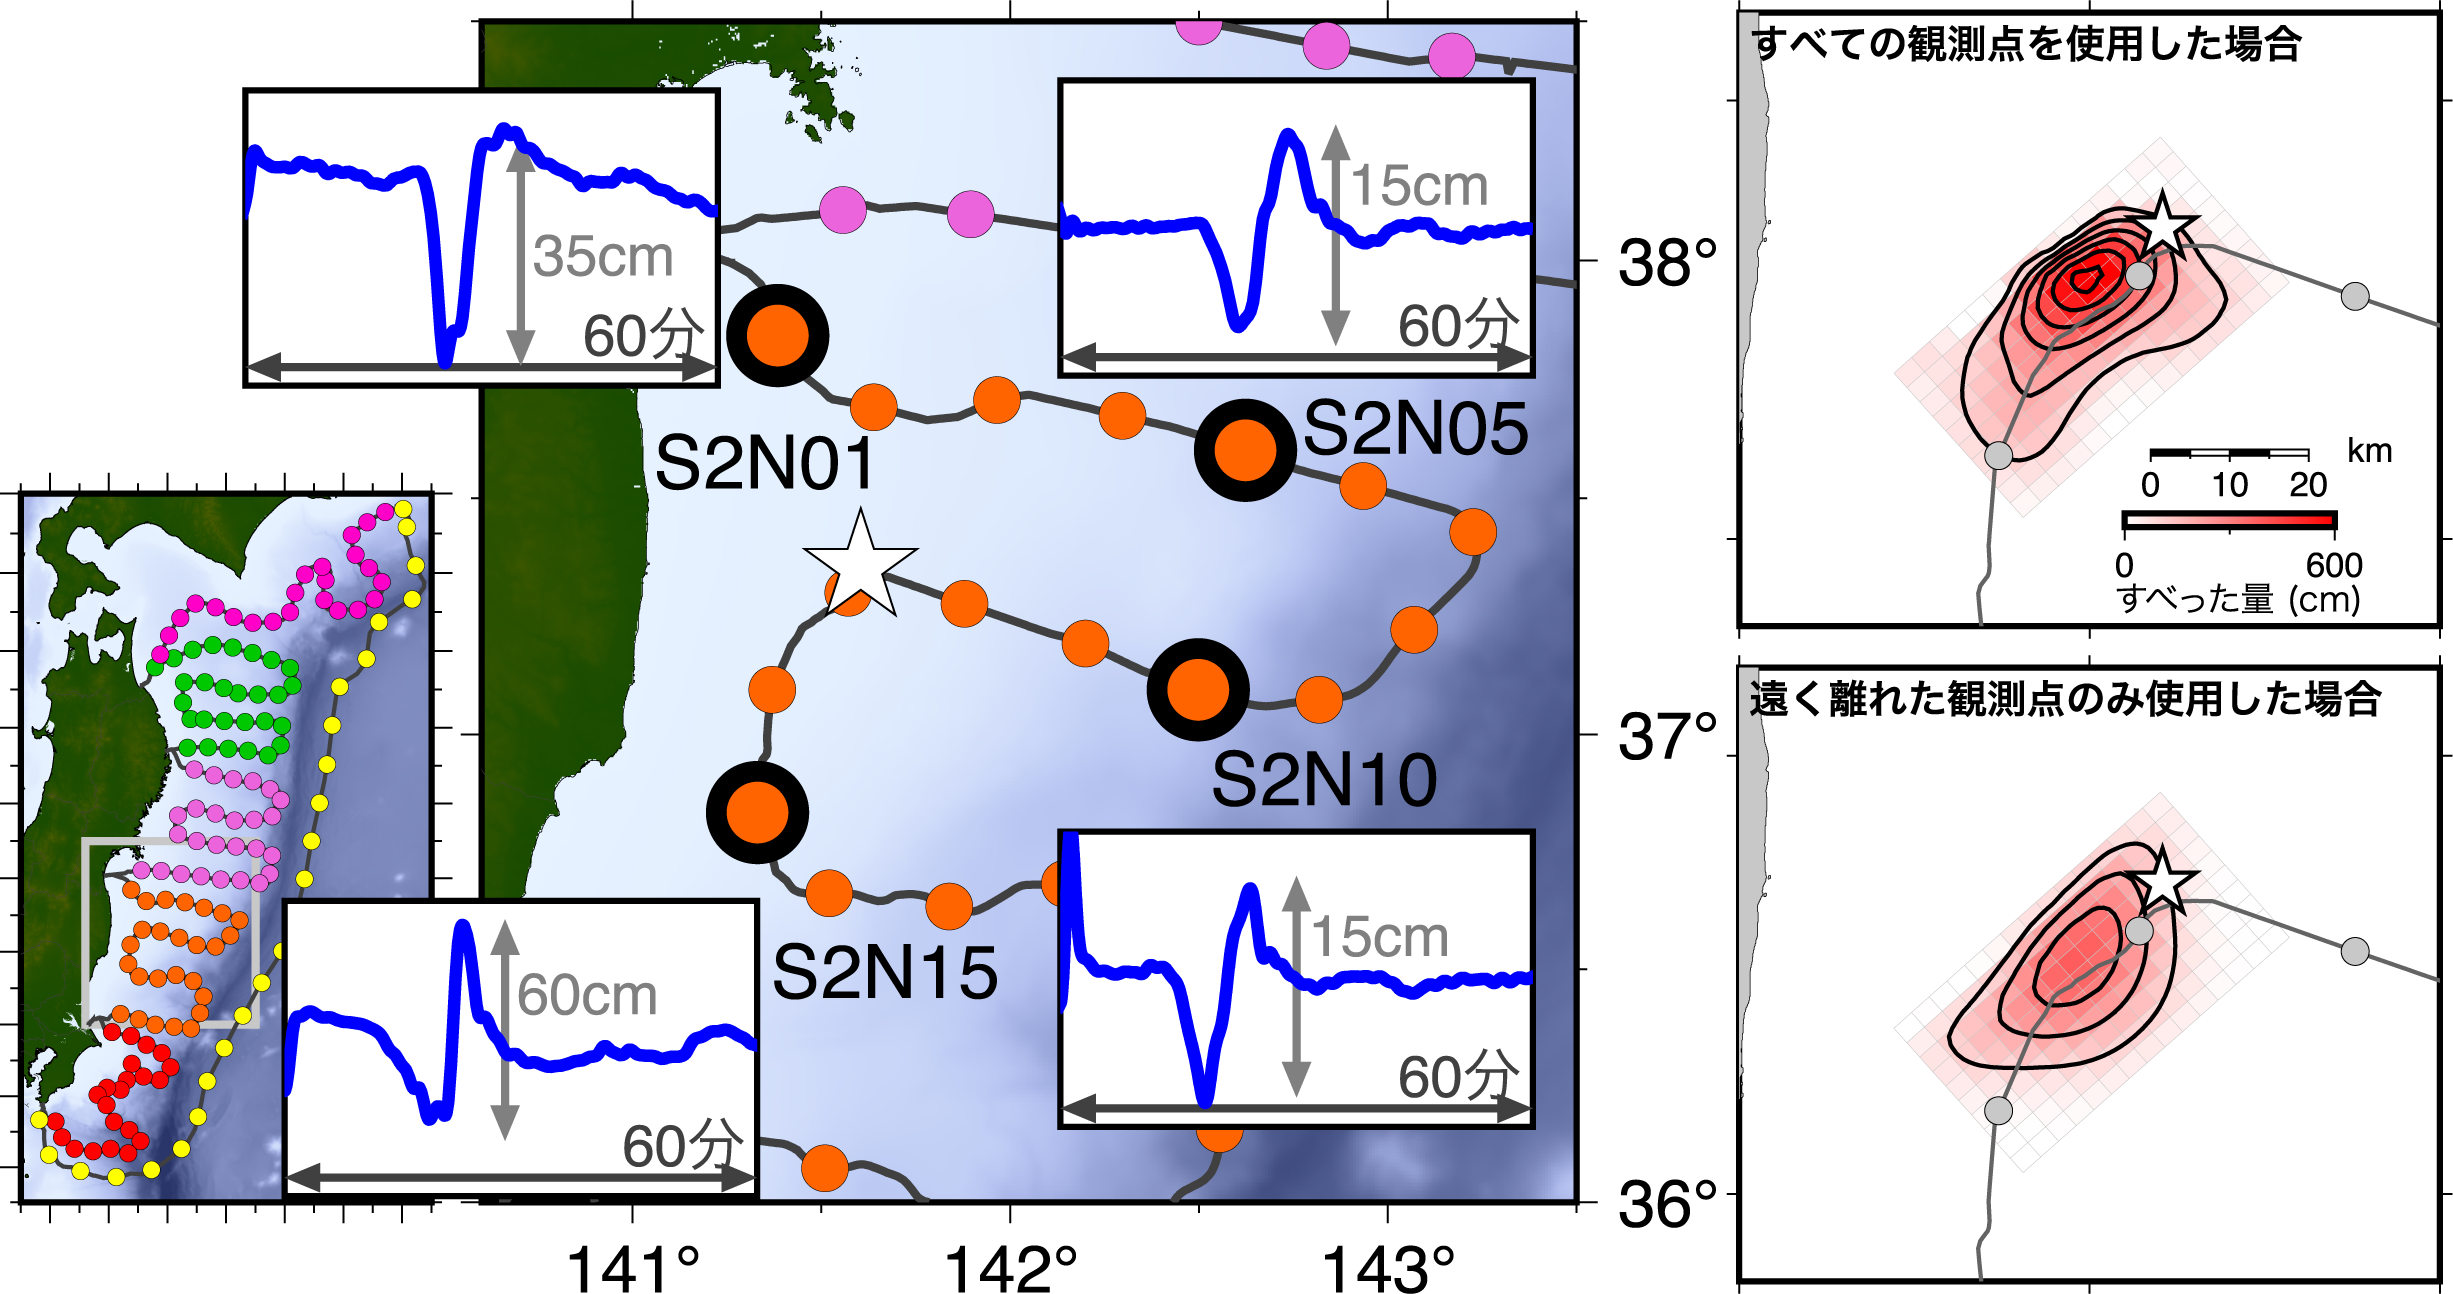 (左) S-netの観測点の配置と福島県沖の領域の拡大図，および代表的な観測点で記録された津波の波形．2016年の福島県沖の地震の震央位置を星印で示す．(右上) S-netの全観測点を使用した場合に推定される2016年福島県沖の地震のすべり分布．色の濃淡はすべり量を示し，すべり量100cmごとに等値線 (コンター線) を描いている．(右下) 震源域から遠い観測点のみ使用した場合のすべり分布． 